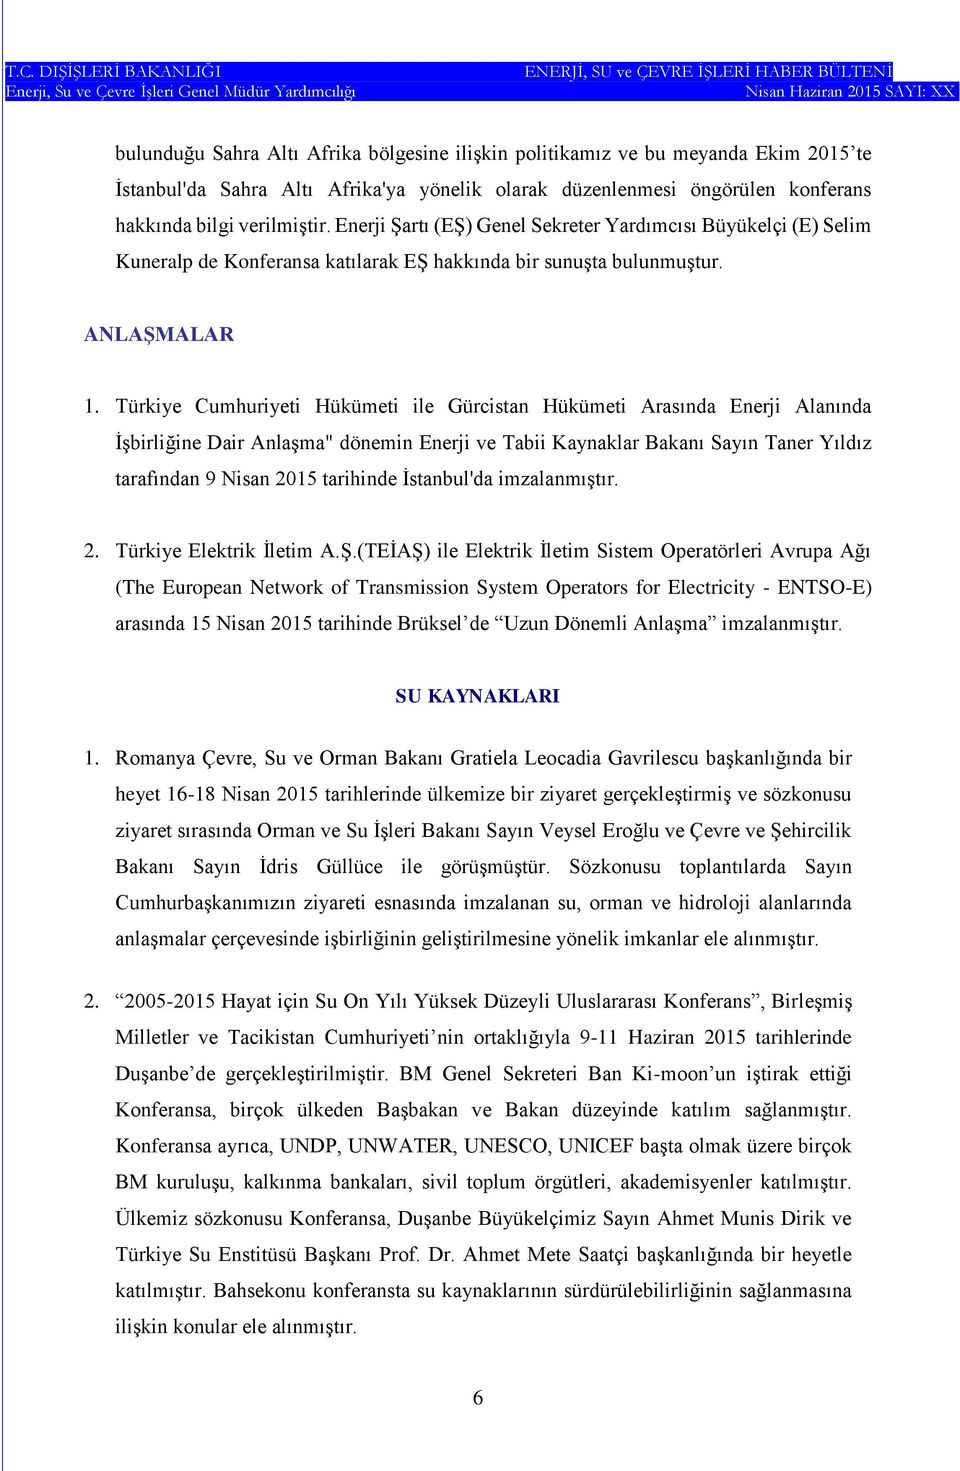 Türkiye Cumhuriyeti Hükümeti ile Gürcistan Hükümeti Arasında Enerji Alanında İşbirliğine Dair Anlaşma" dönemin Enerji ve Tabii Kaynaklar Bakanı Sayın Taner Yıldız tarafından 9 Nisan 2015 tarihinde